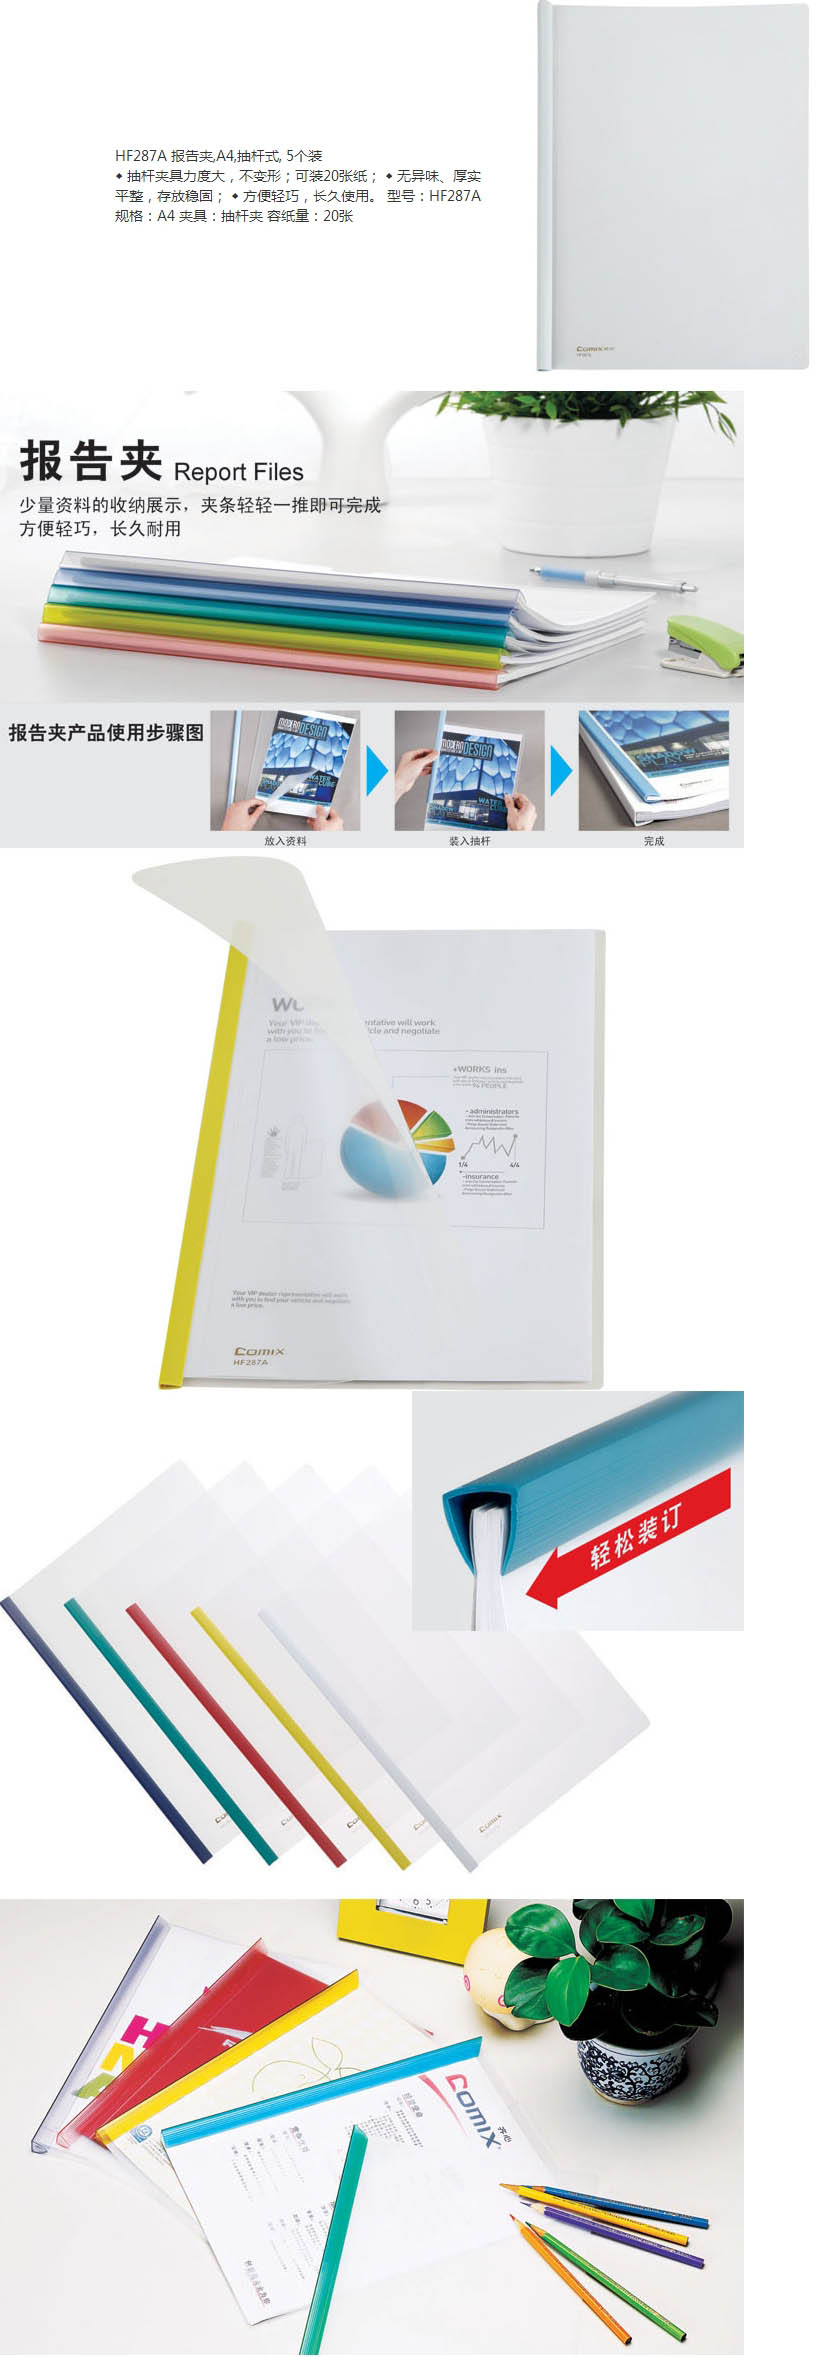 齐心(Comix) 5个装 抽杆式报告夹A4 文件夹 HF287A 颜色随机【价格、品牌、报价】-1.jpg